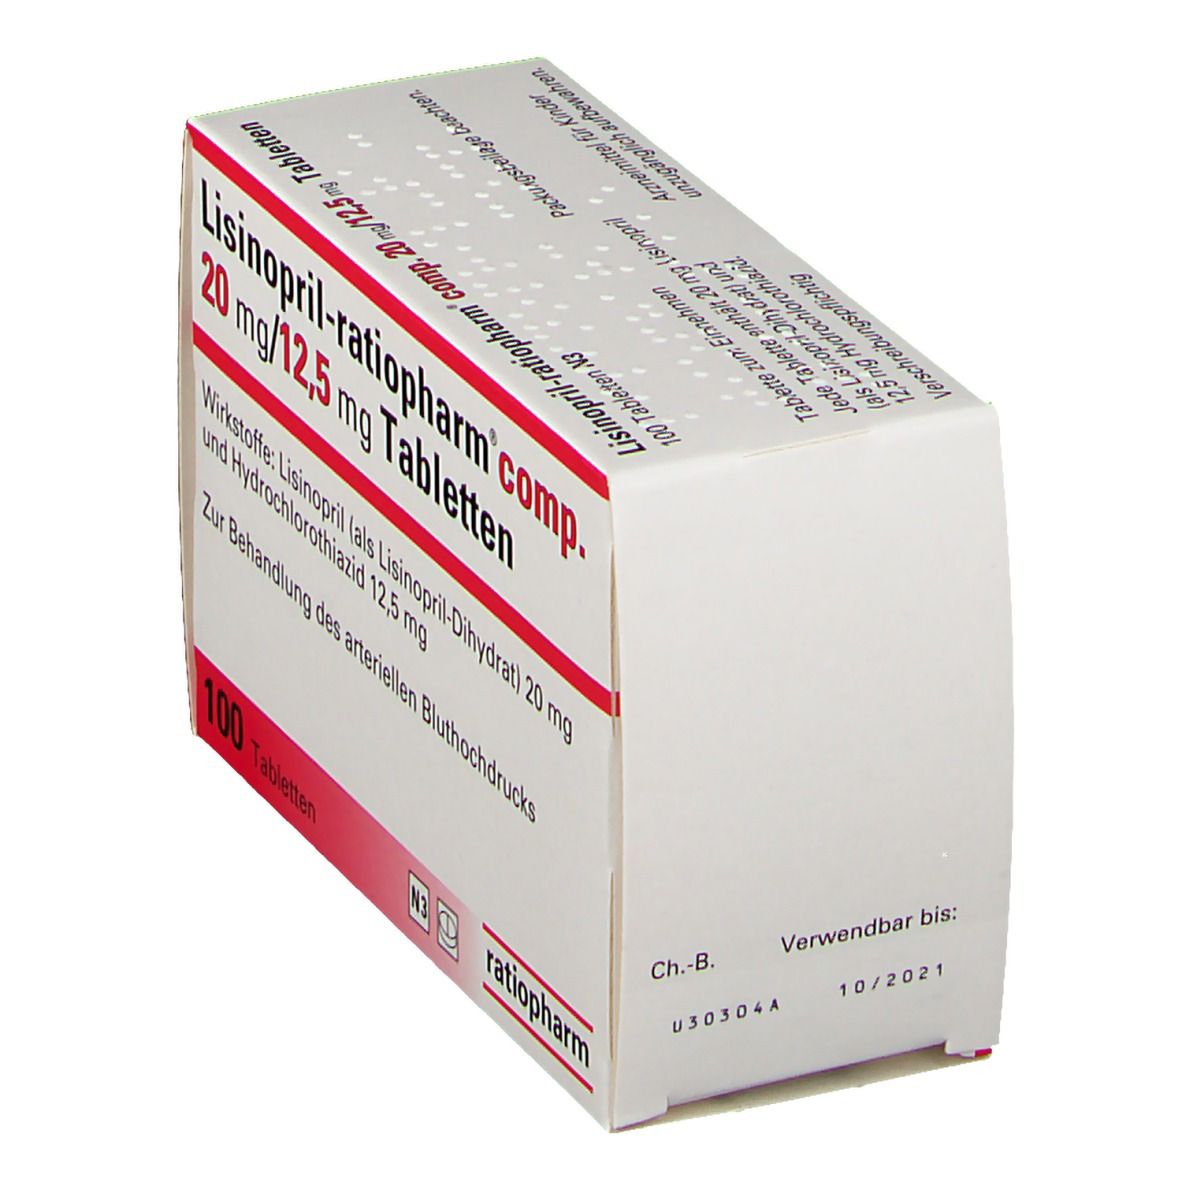 Lisinopril-ratiopharm® comp. 20 mg/12,5 mg